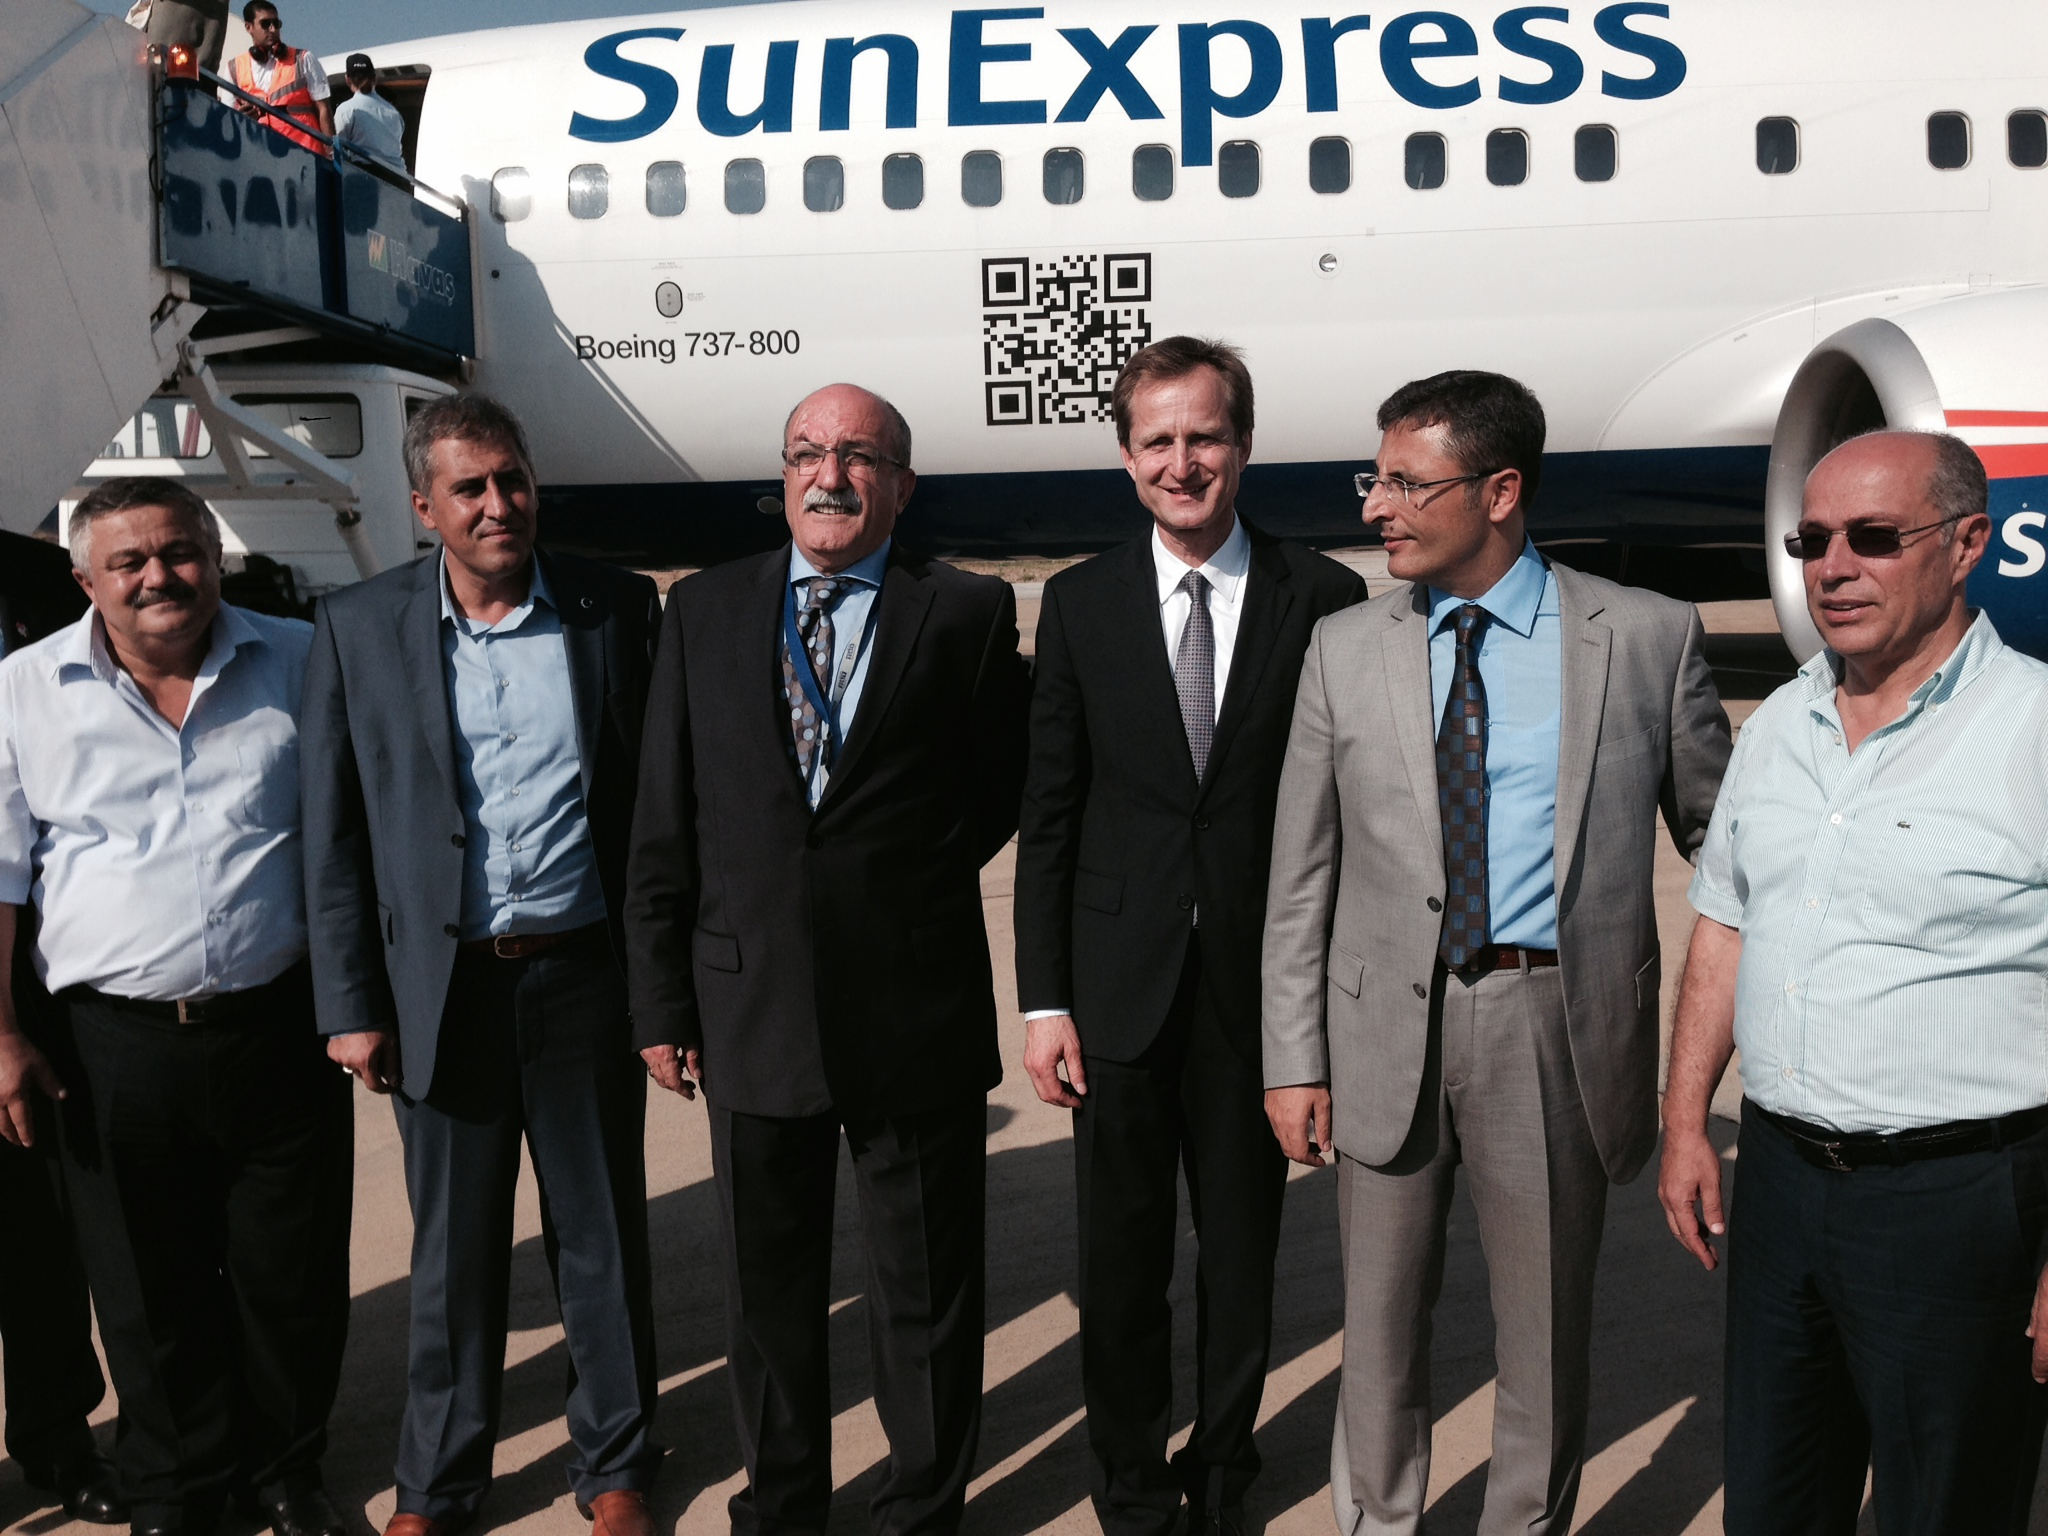  SunExpress Alman tur operatörlerine Alanya’yı tanıttı